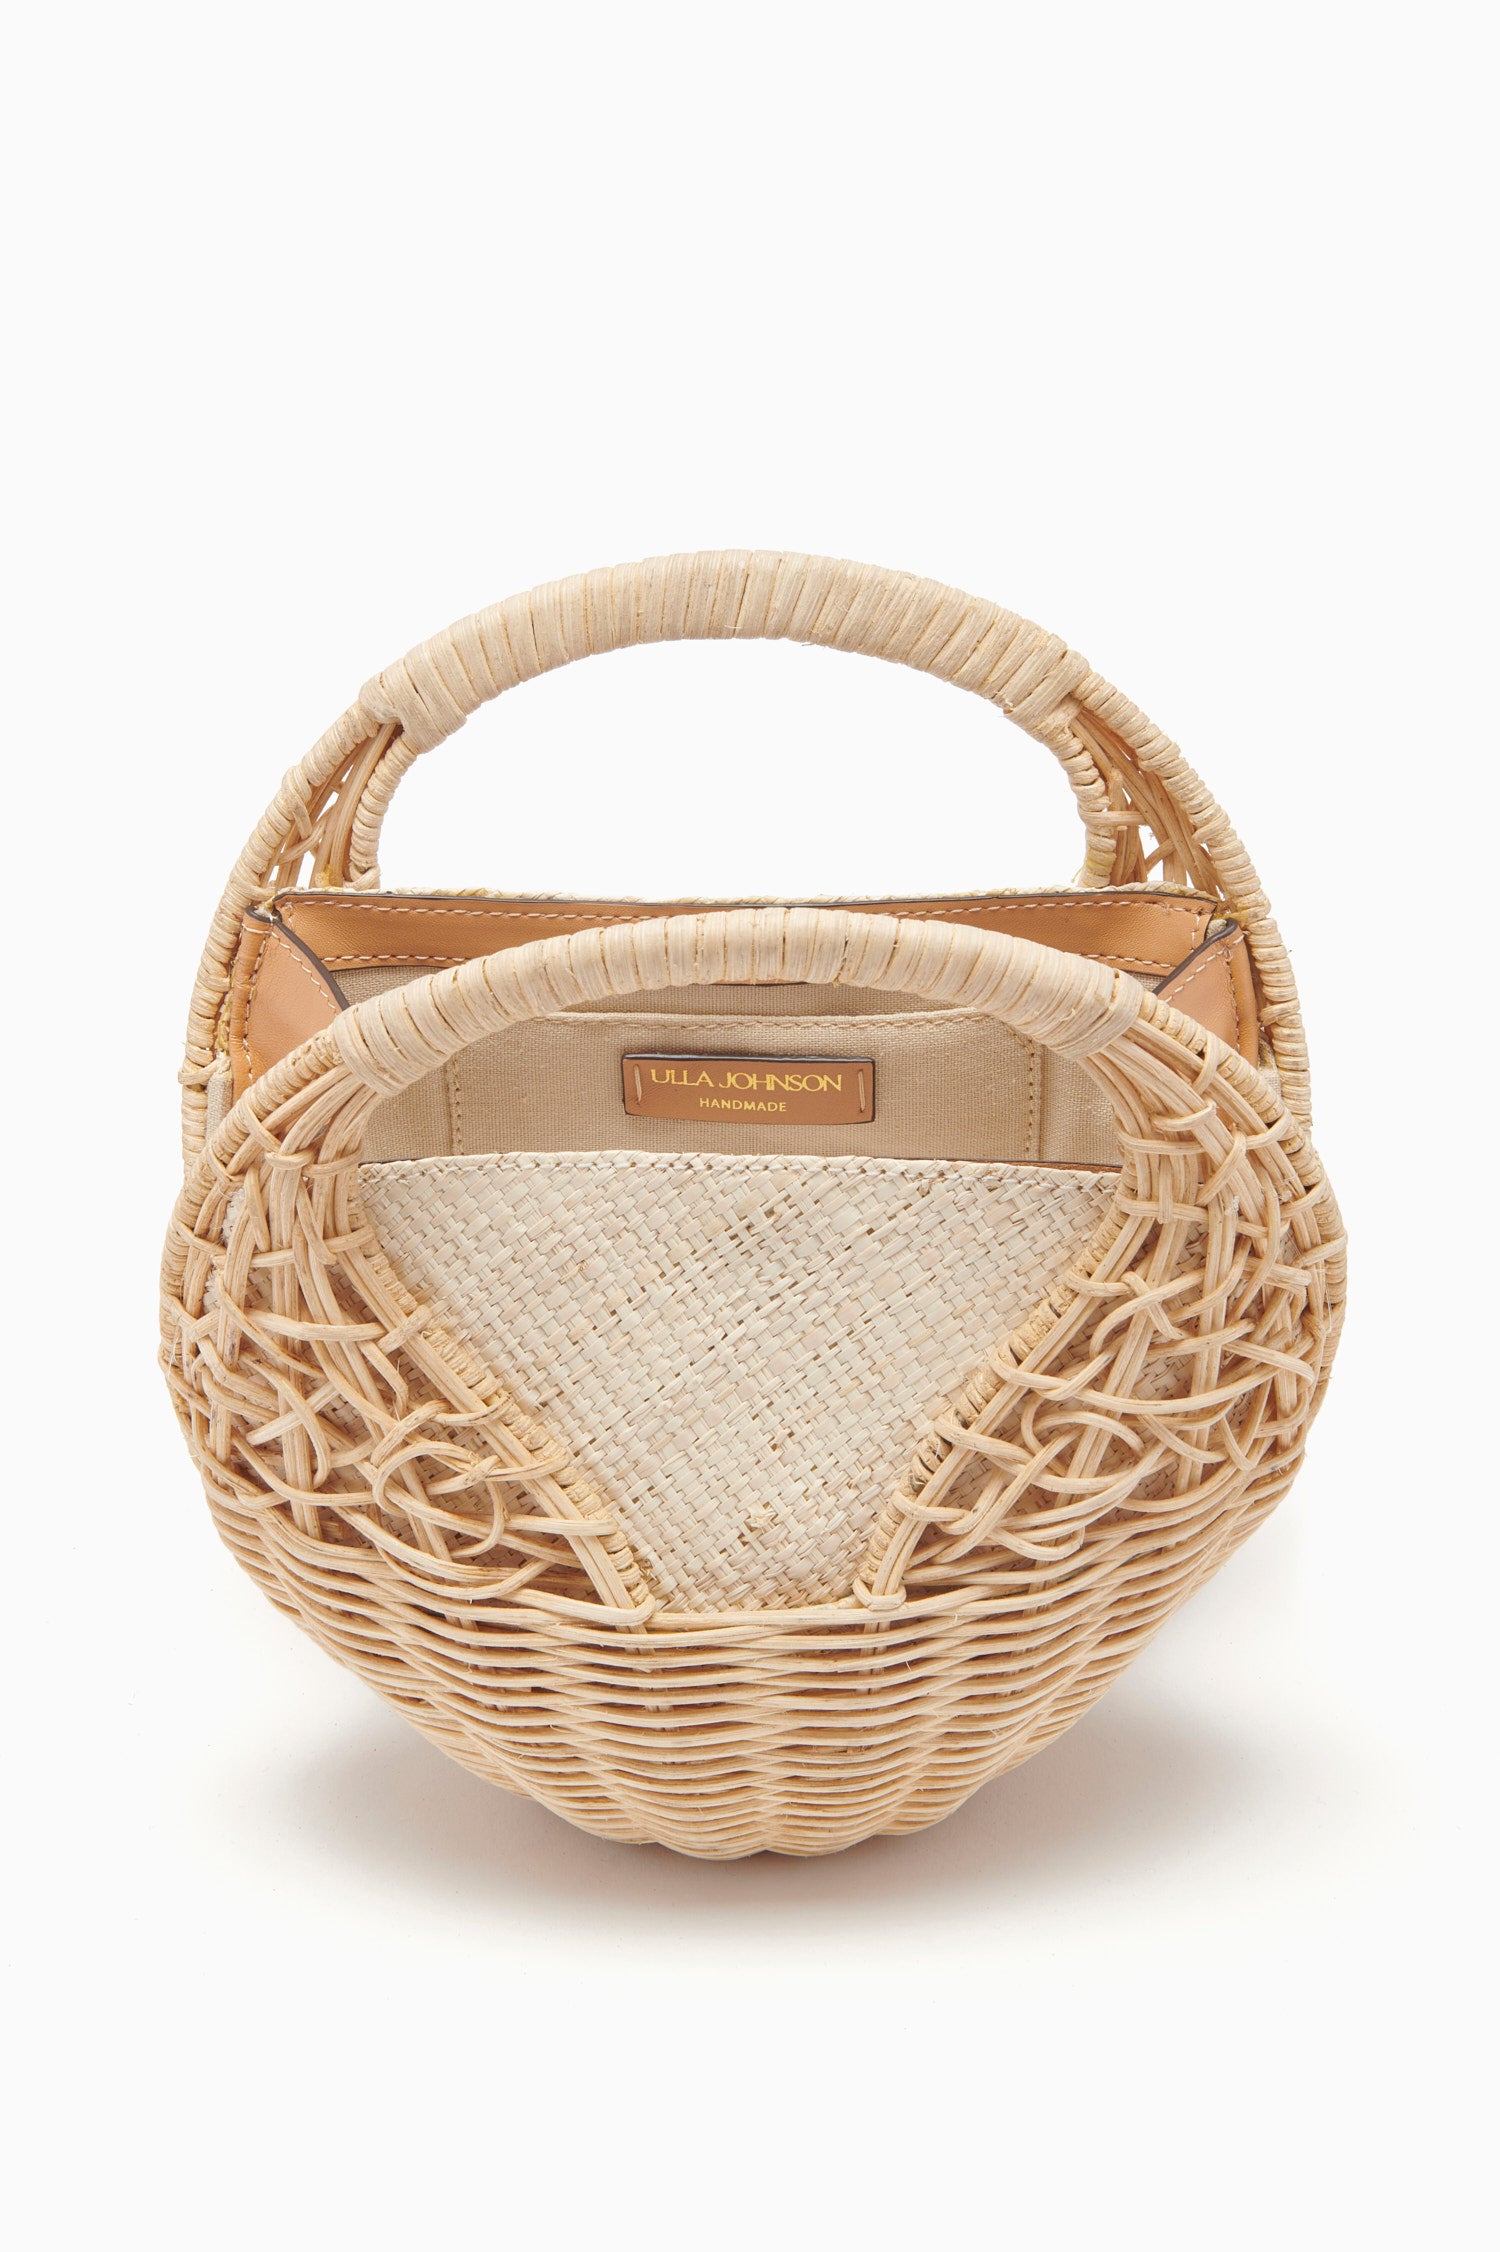 Hand Woven Basket Bag Exporter - 005 - handcraftCustom.com